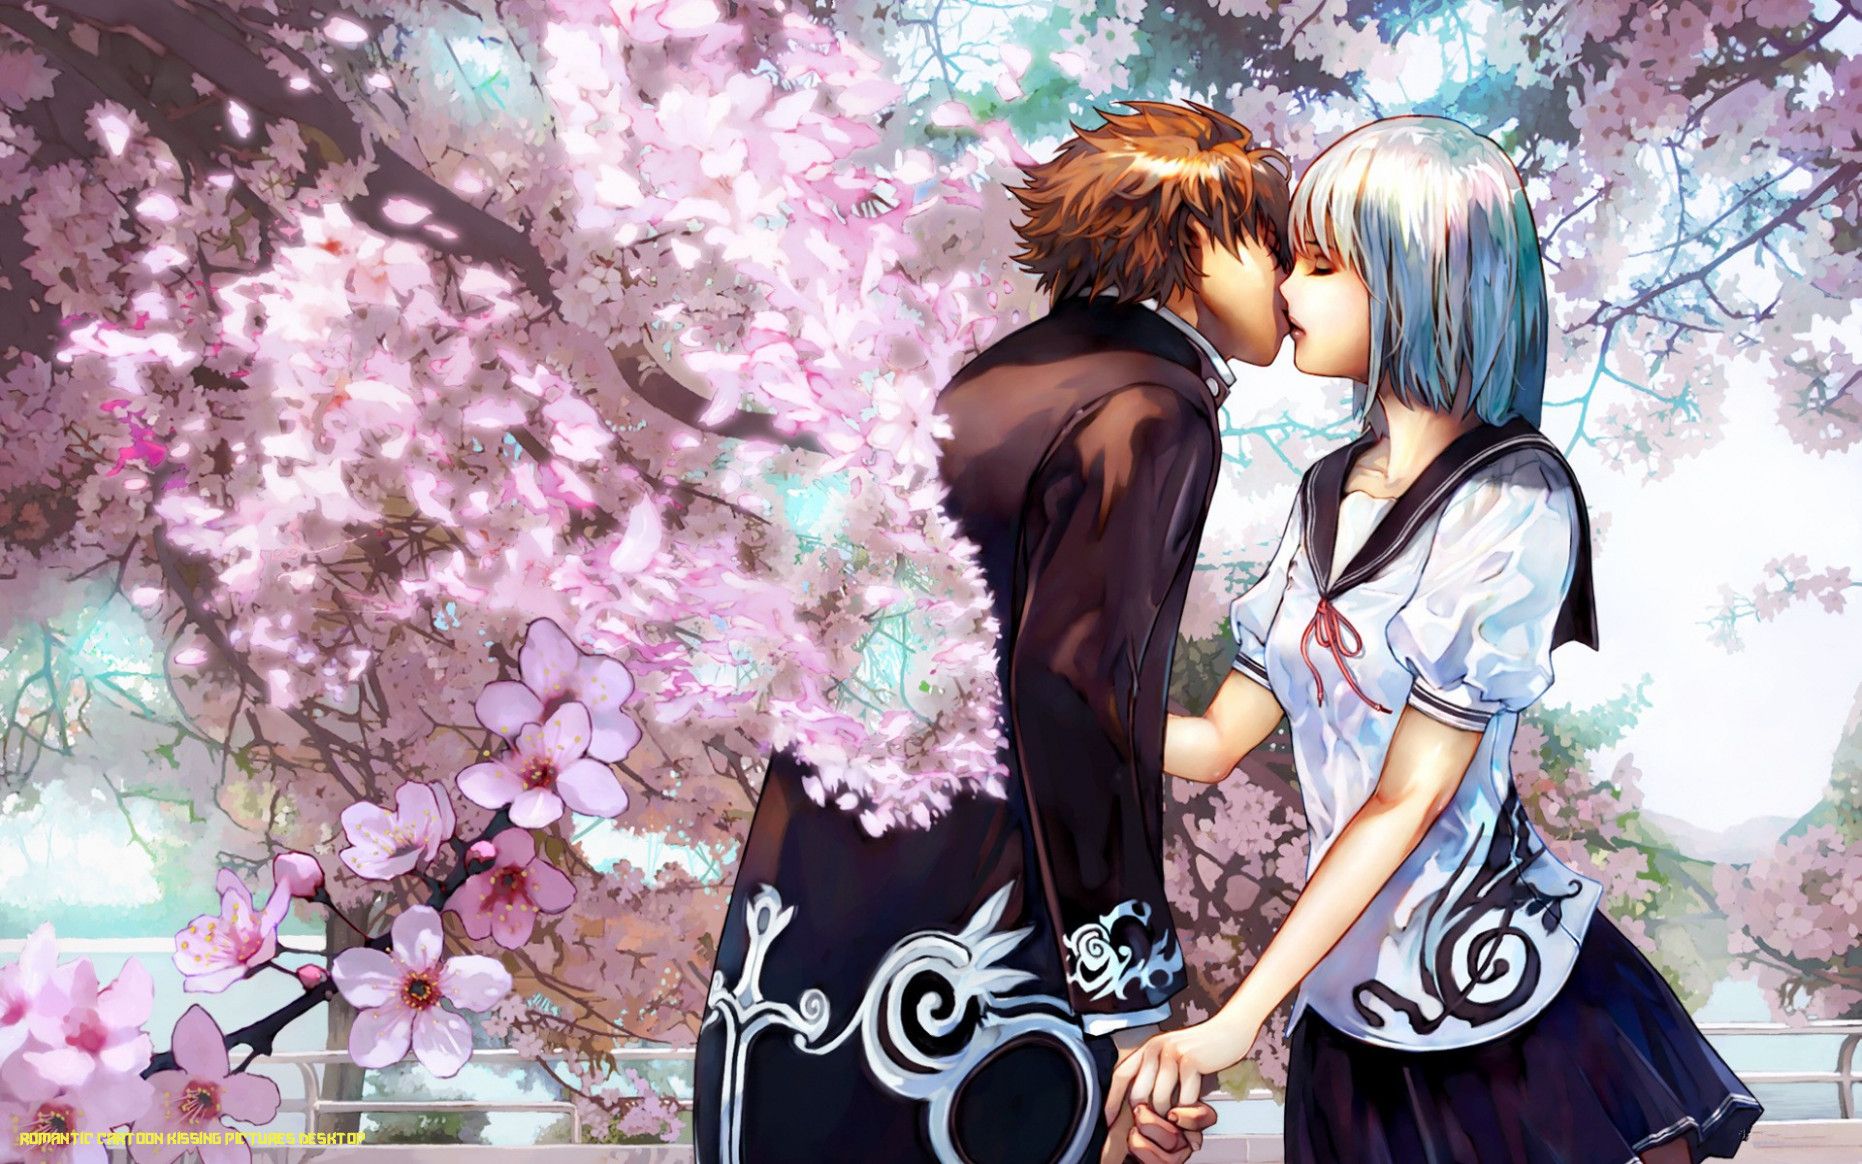 wallpaper for desktop, laptop  av44-anime-kiss -love-green-girl-boy-illustration-art